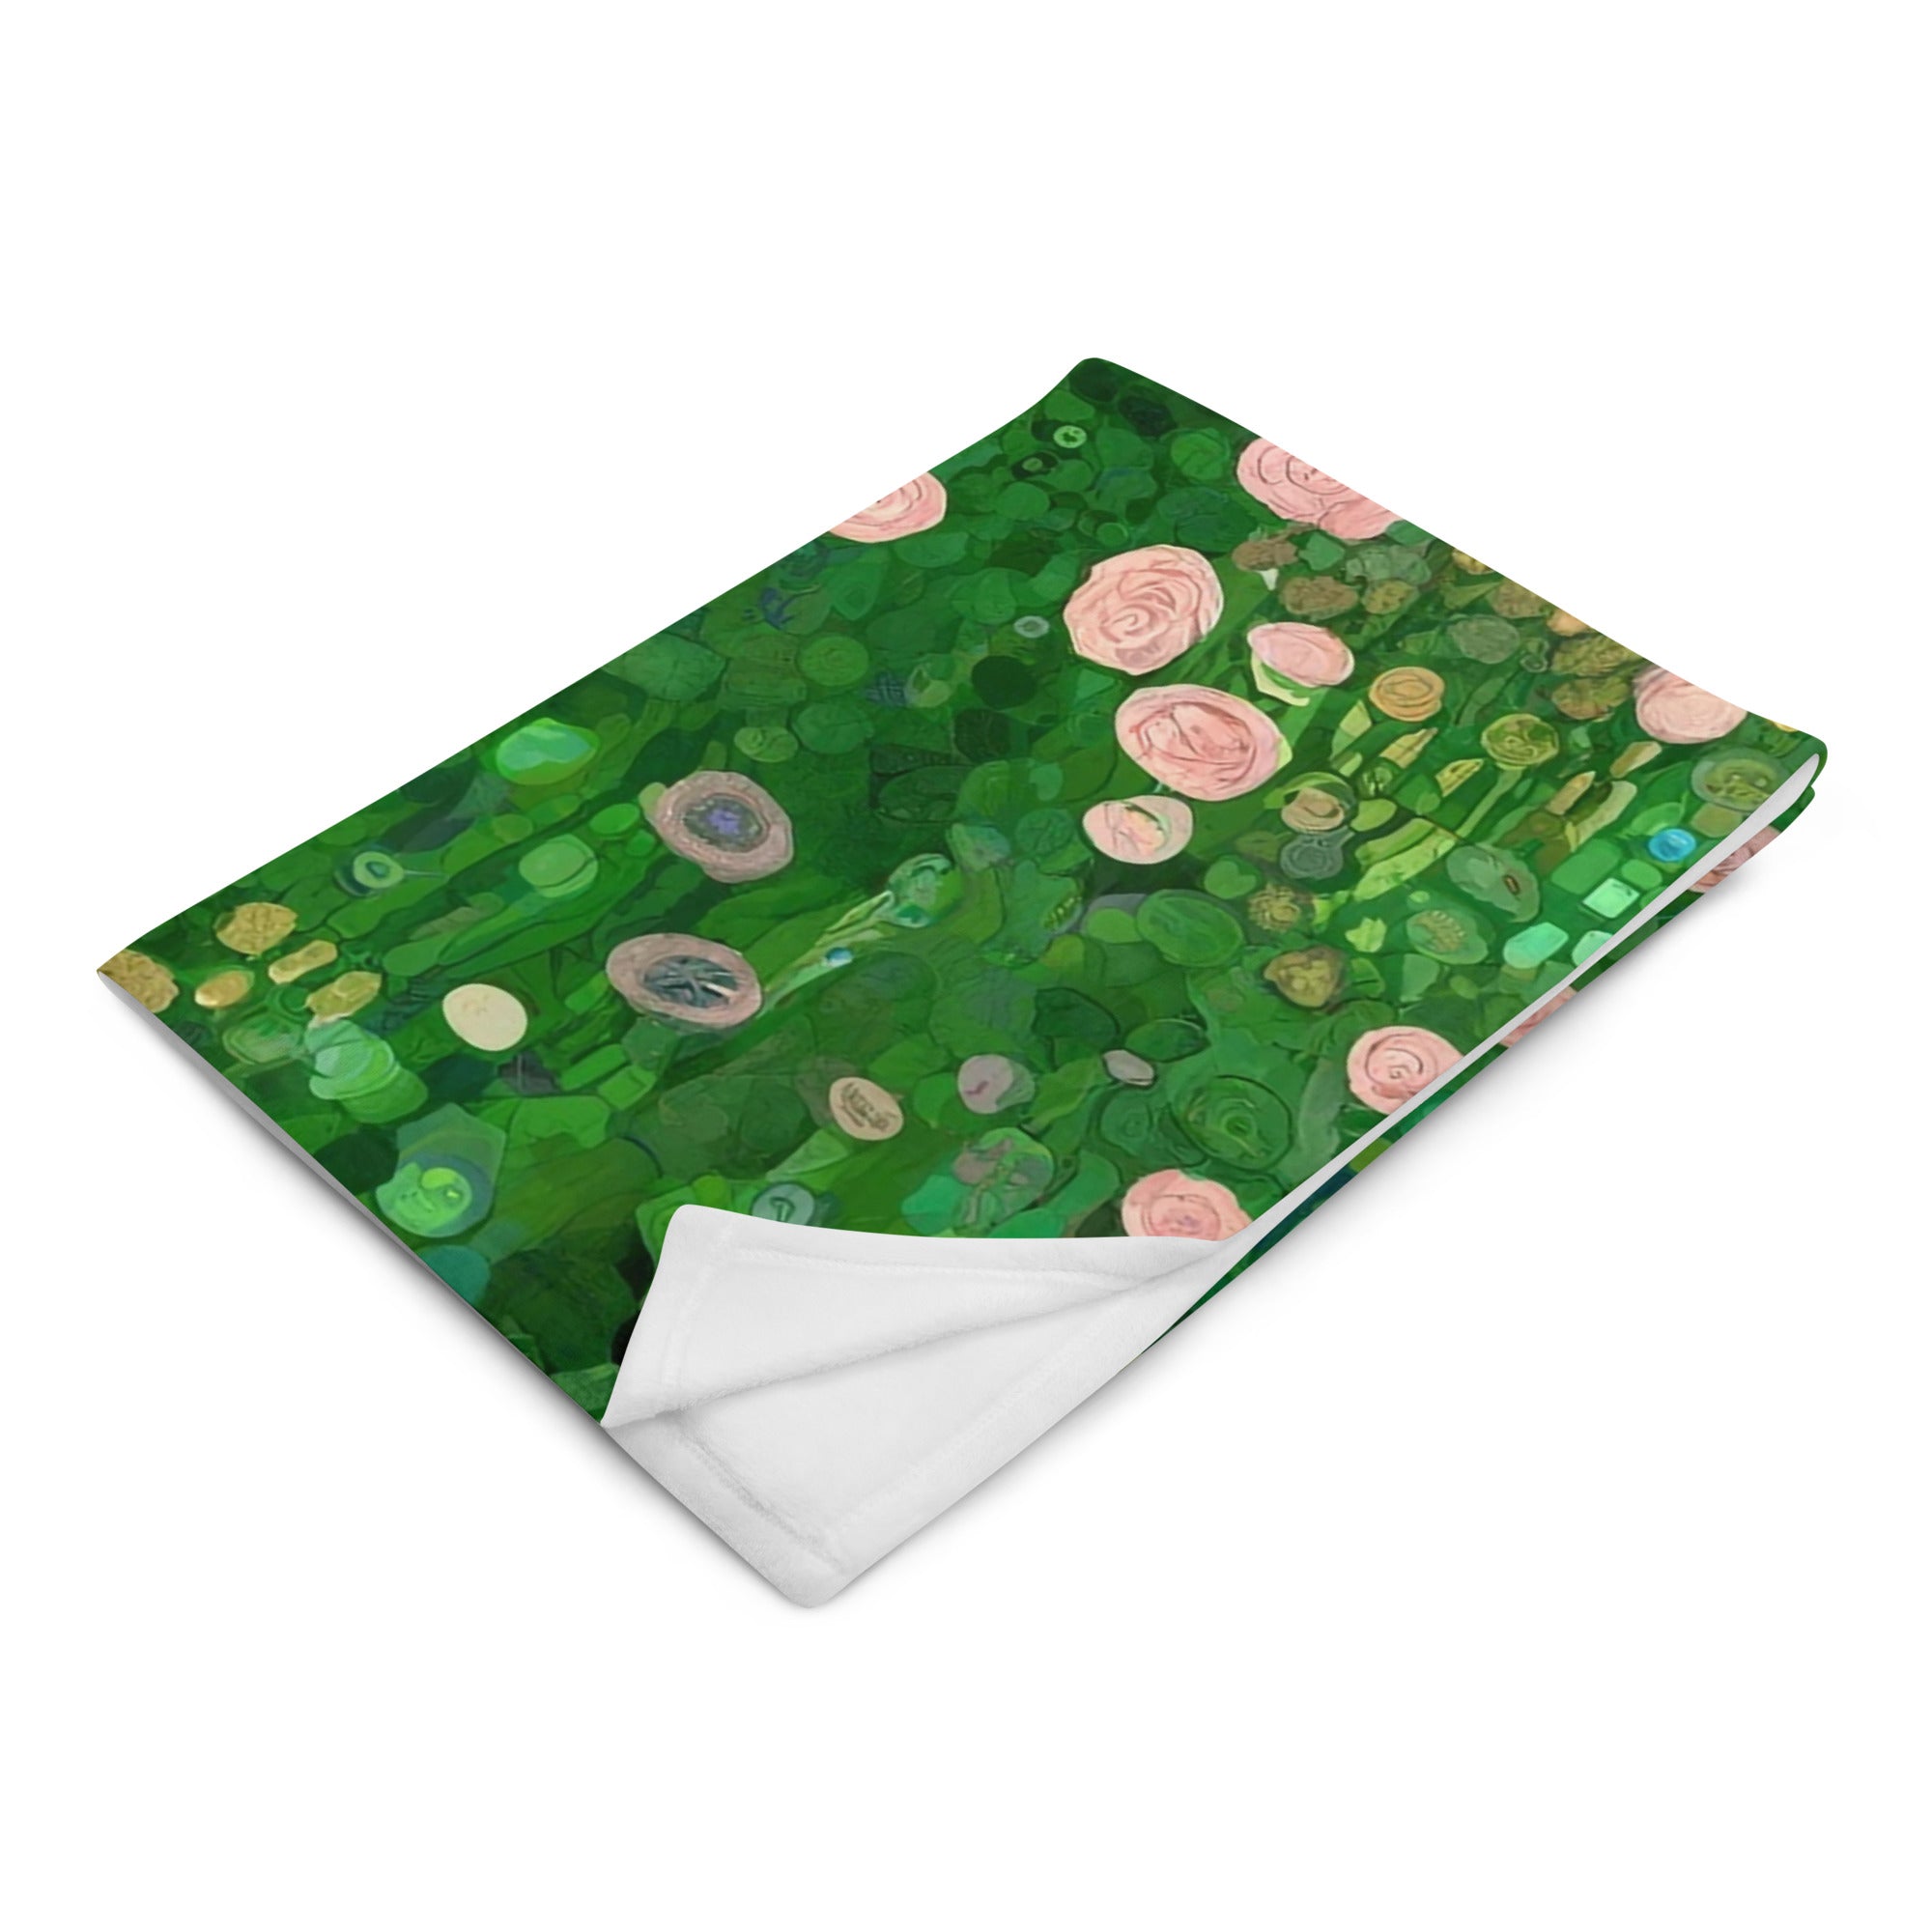 Gustav Klimt 'Rosebushes under the Trees' Famous Painting Throw Blanket | Premium Art Throw